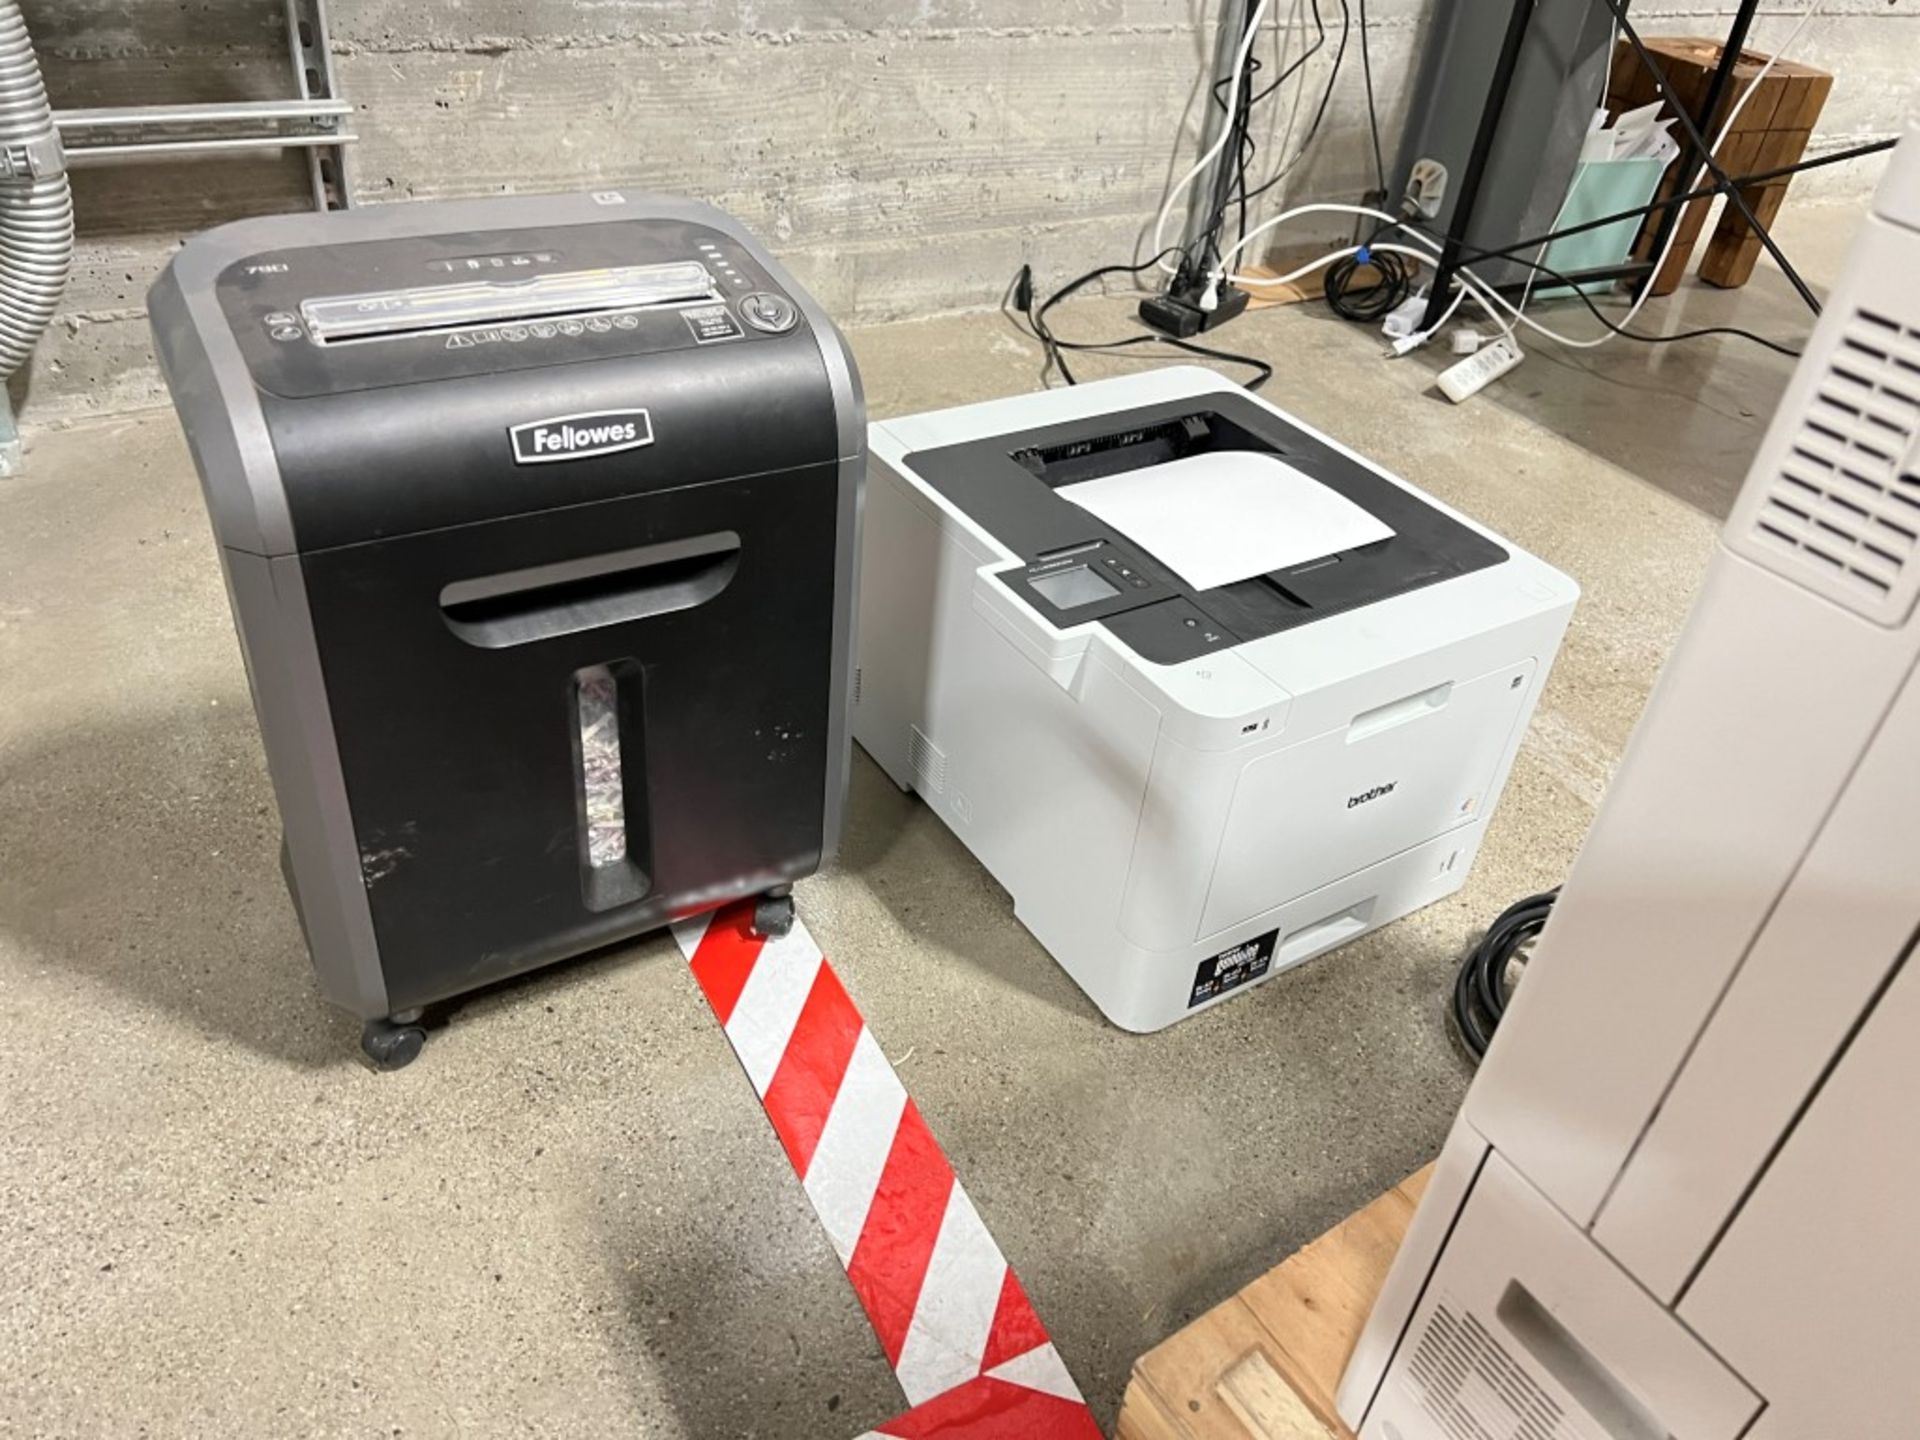 Printer and Shredder